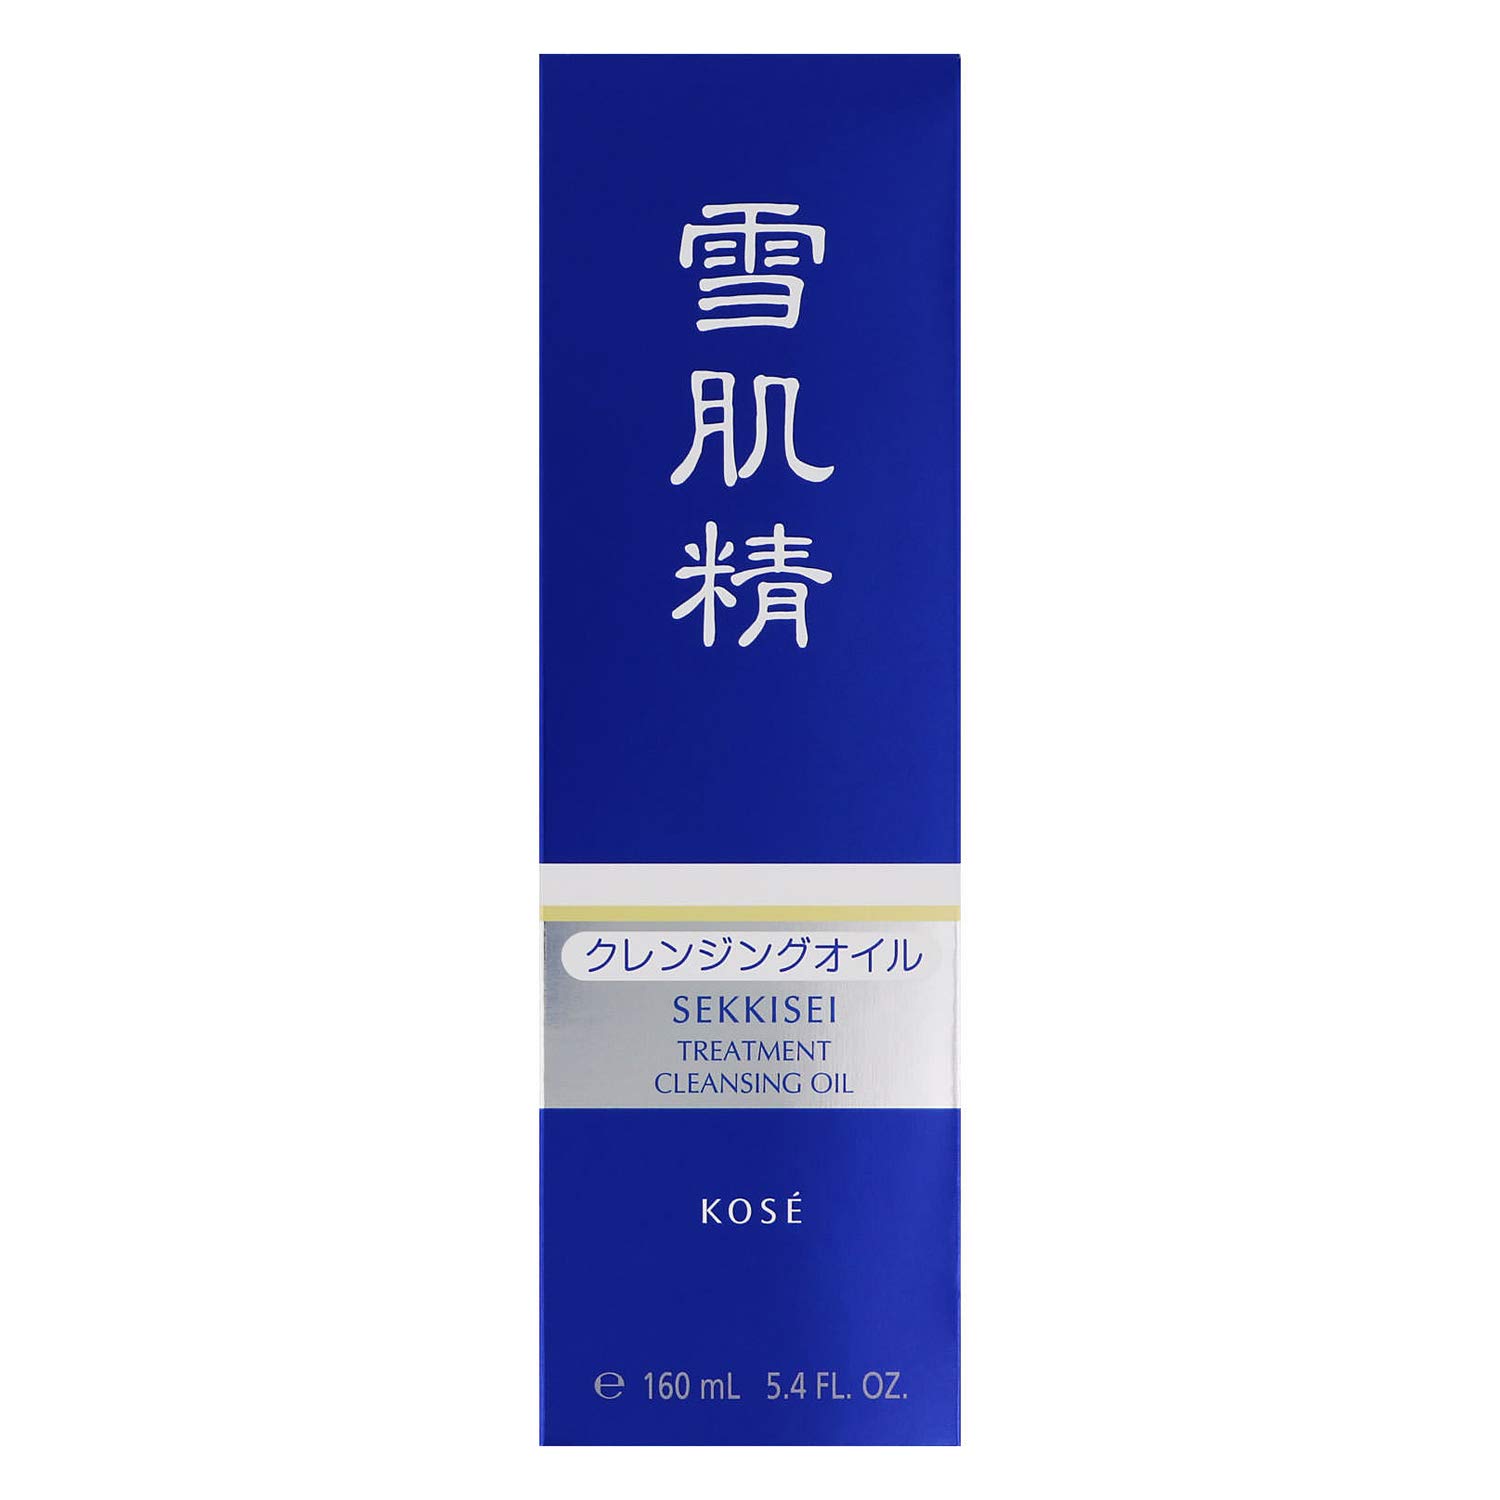 Sekkisei Treatment Creansing Oil -  160 ml-3